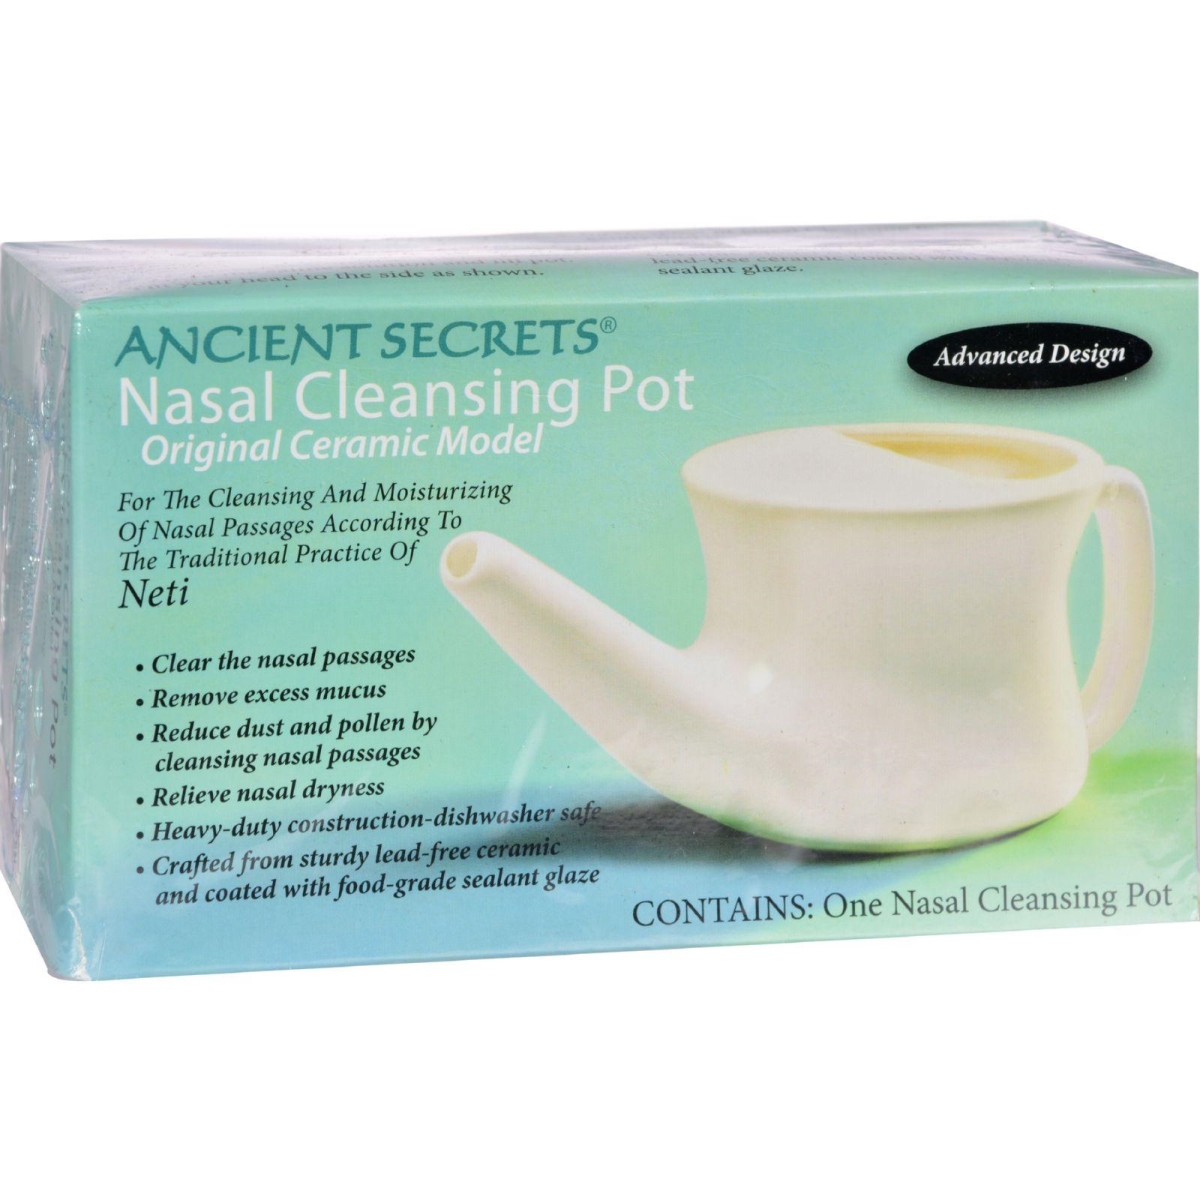 Hg0201772 Nasal Cleansing Pot - 1 Pot